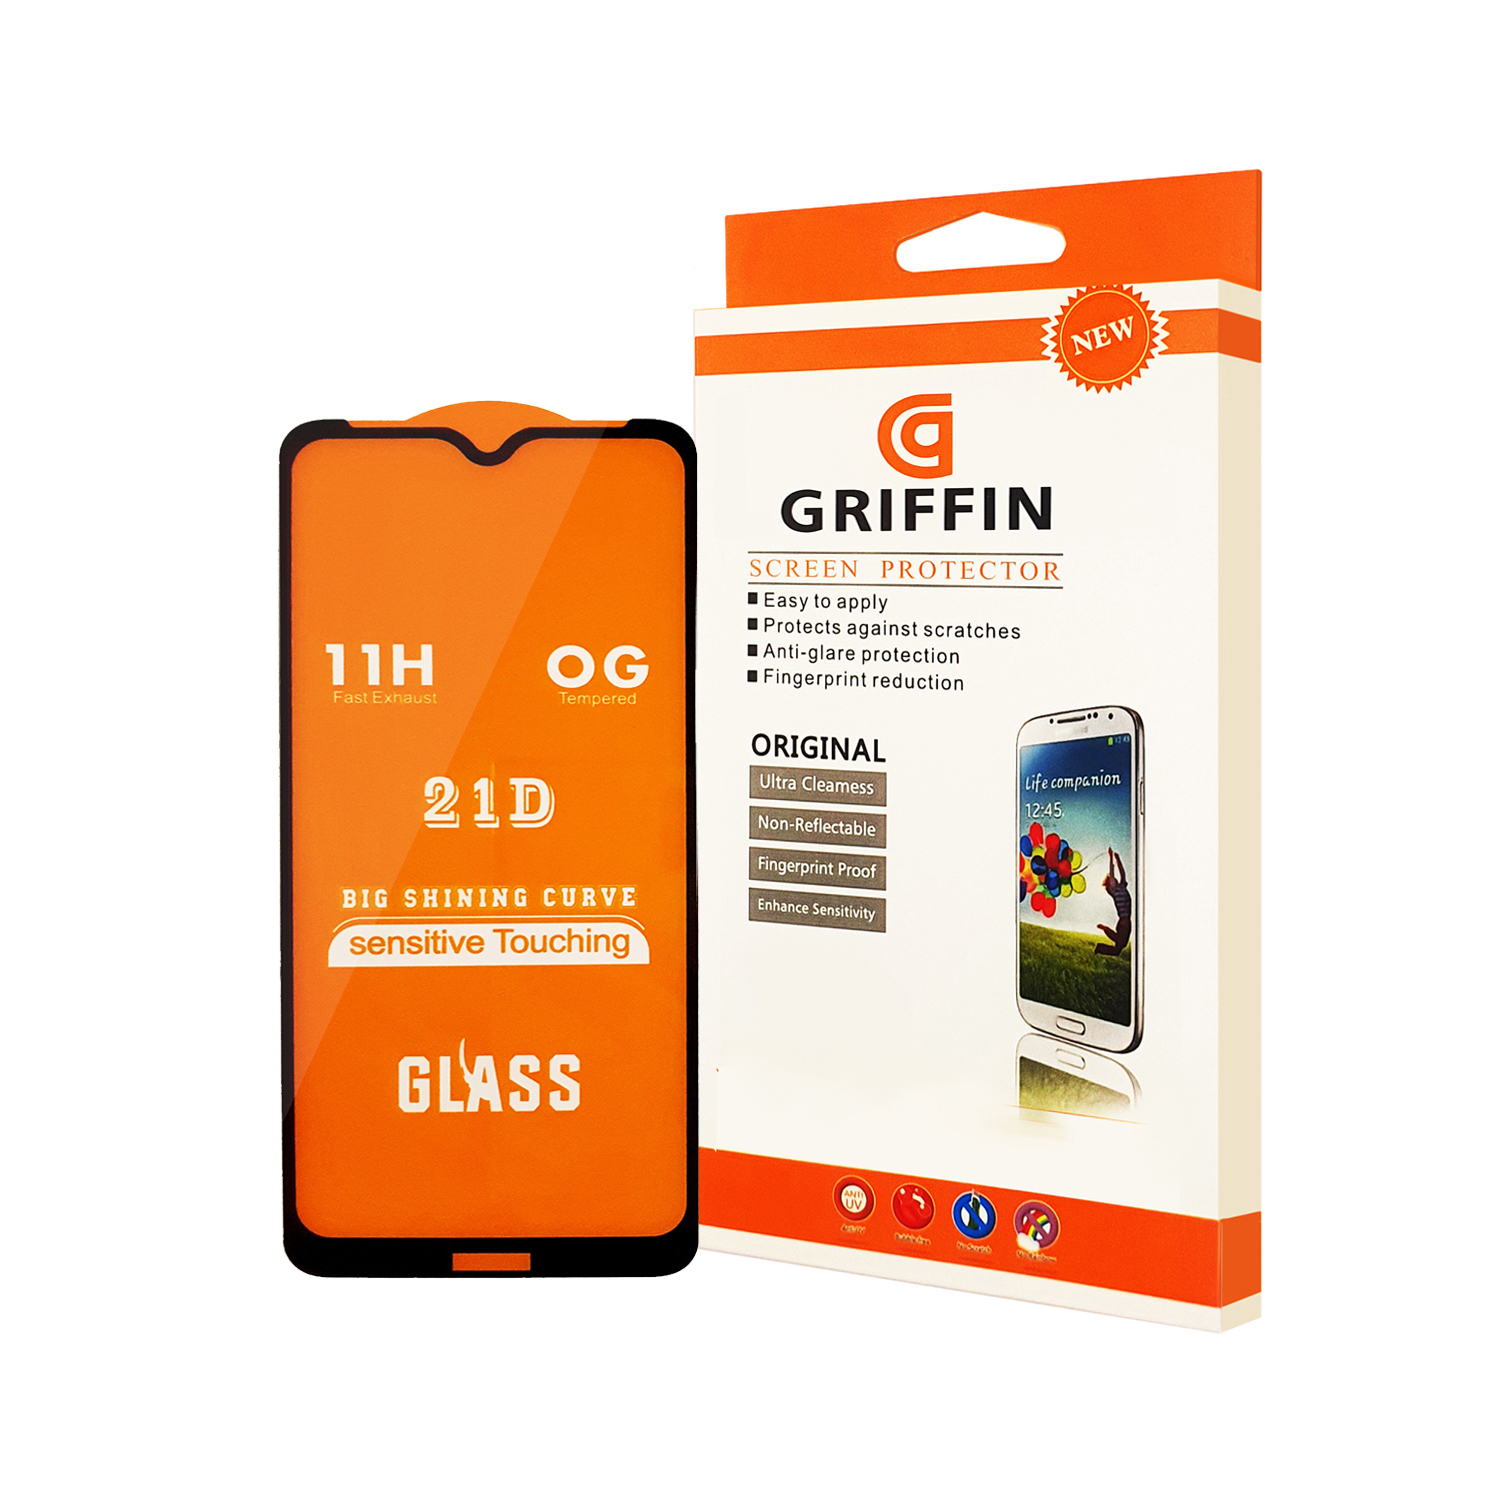 محافظ صفحه نمایش گریفین مدل F21 GN pl مناسب برای گوشی موبایل نوکیا 6.2